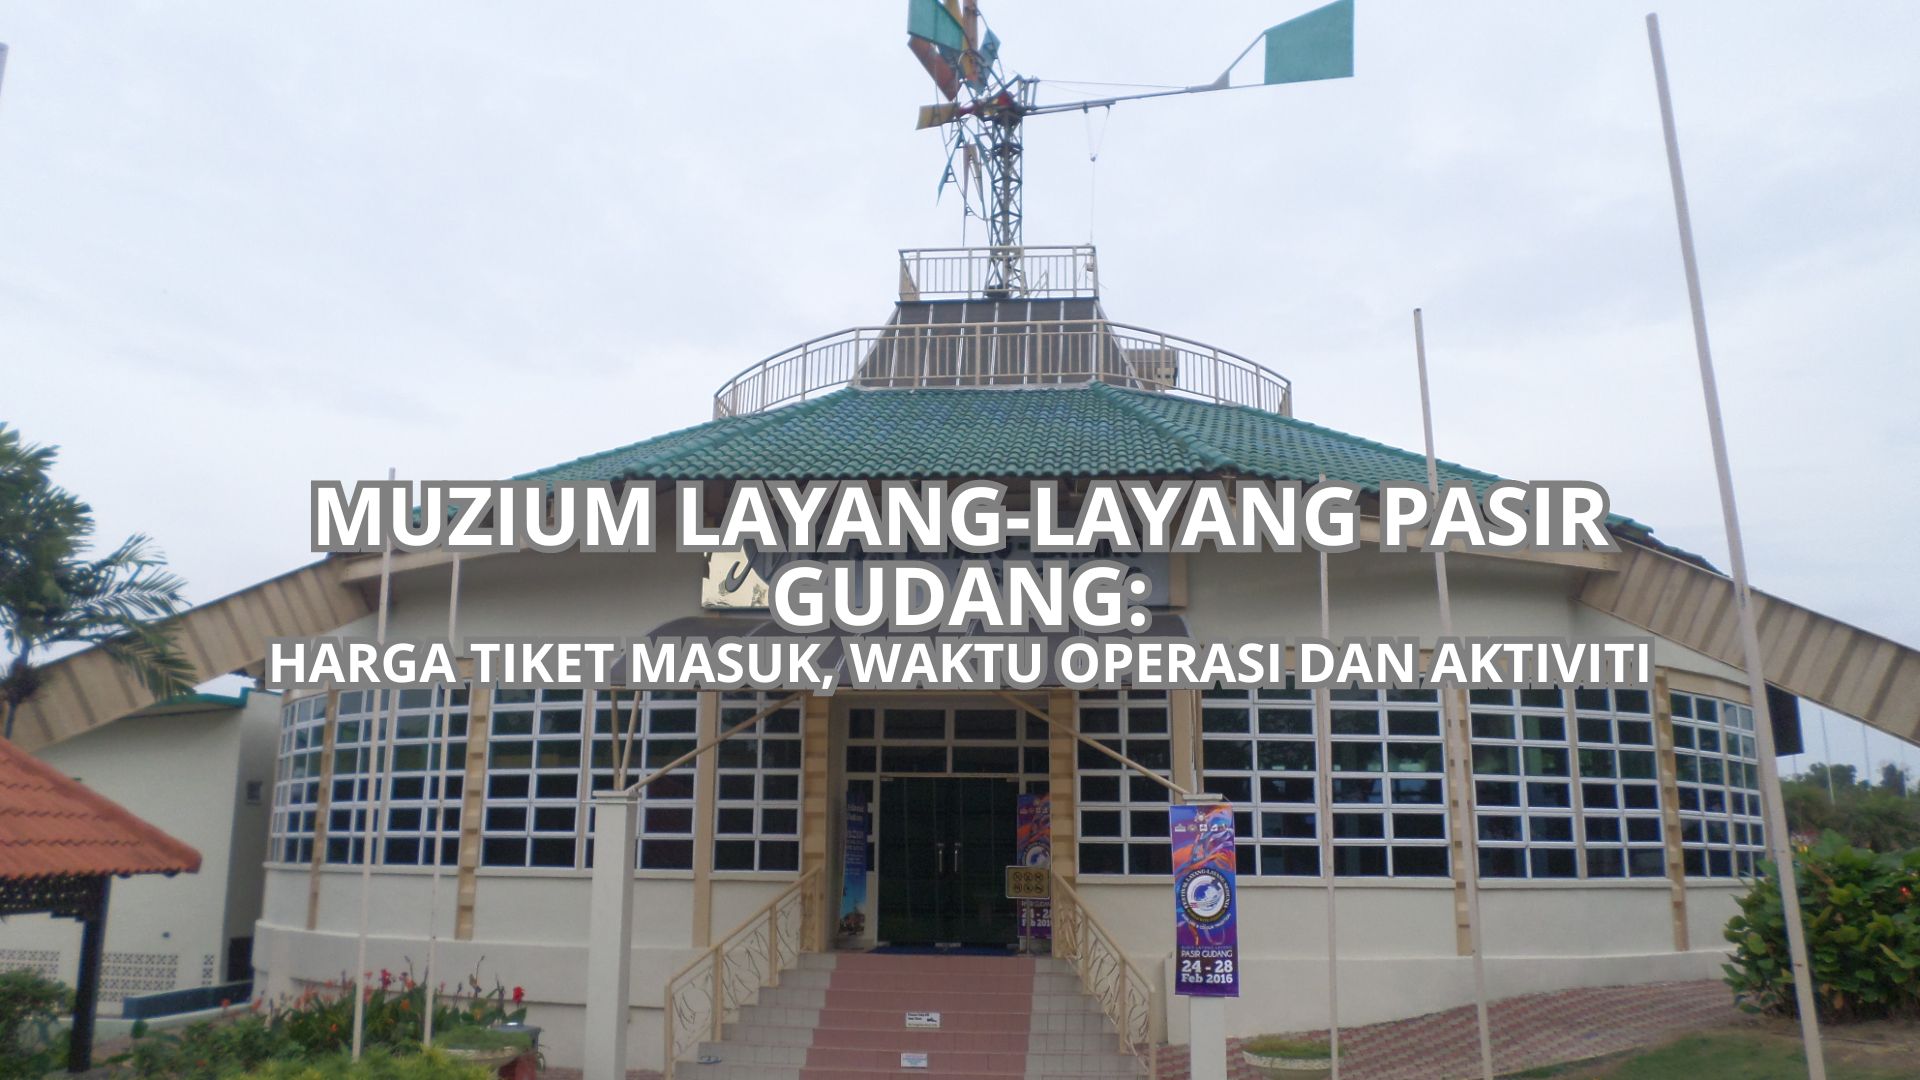 Muzium Layang-Layang Pasir Gudang Cover